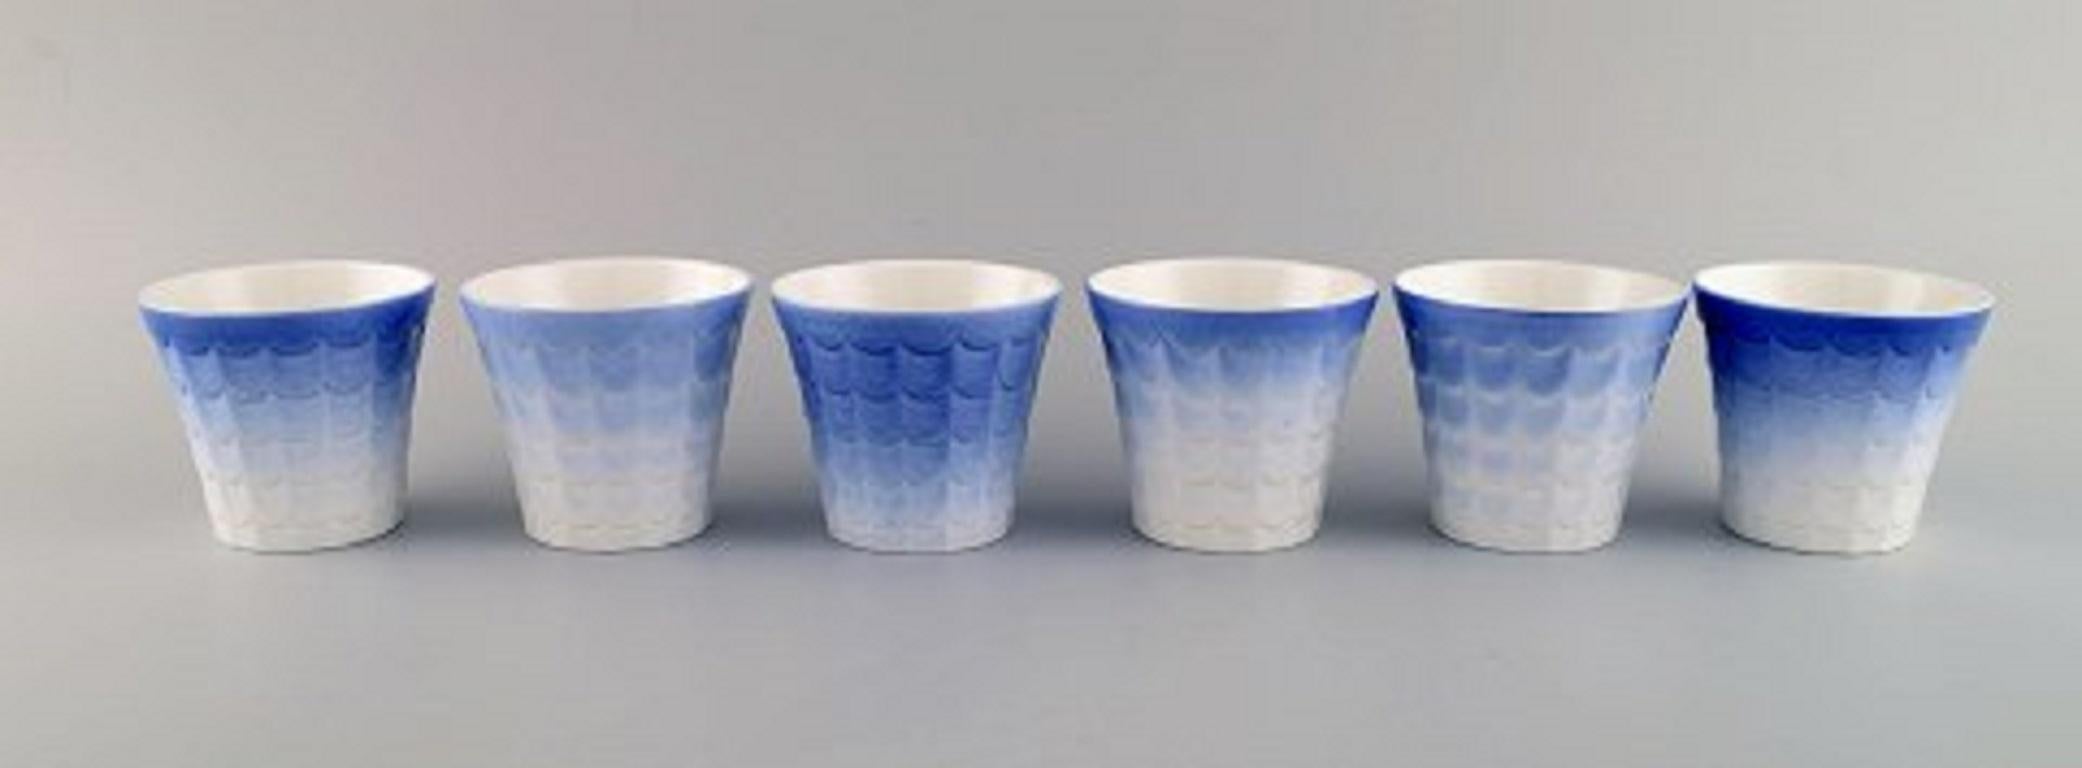 Wilhelm Kåge pour Gustavsberg. Six cache-pots en porcelaine. Design suédois, années 1960.
Mesures : 8.5 x 7,5 cm.
En parfait état.
Estampillé.